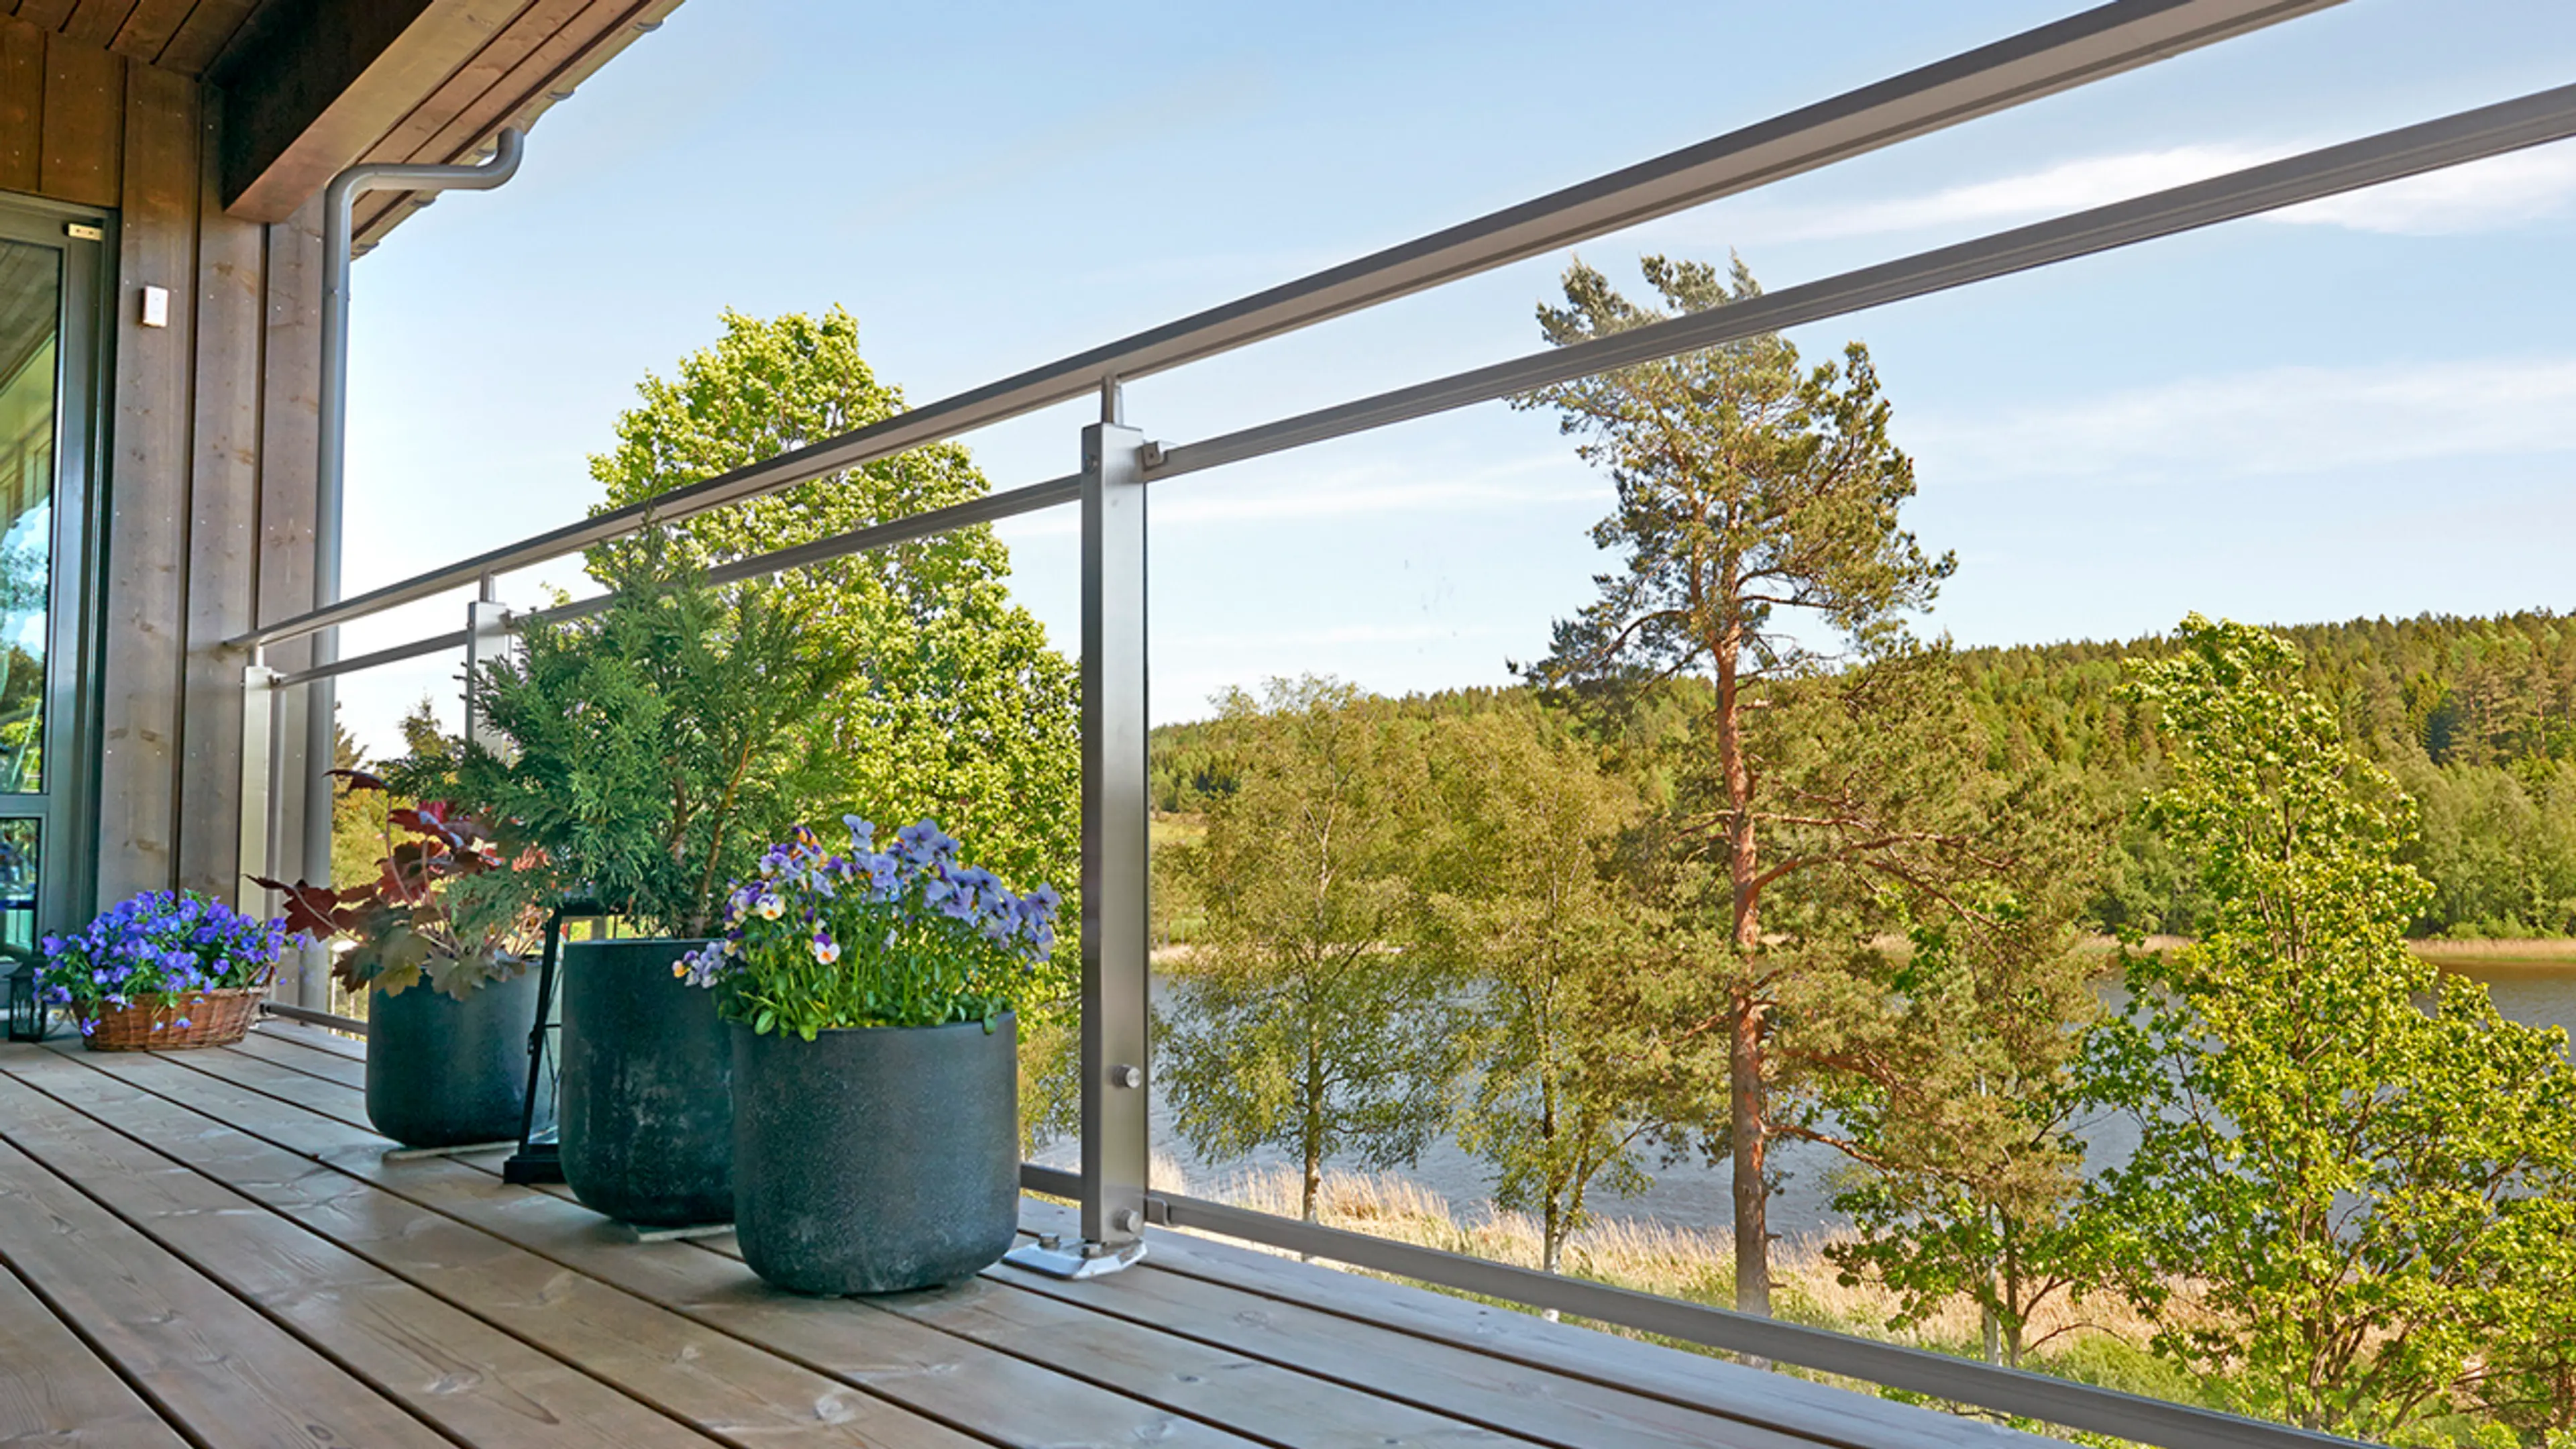 Det finner mange terrasse rekkverk typer. Her ser du glassrekkverk på terrasse som bevarer utsikten mot skogen og vannet.